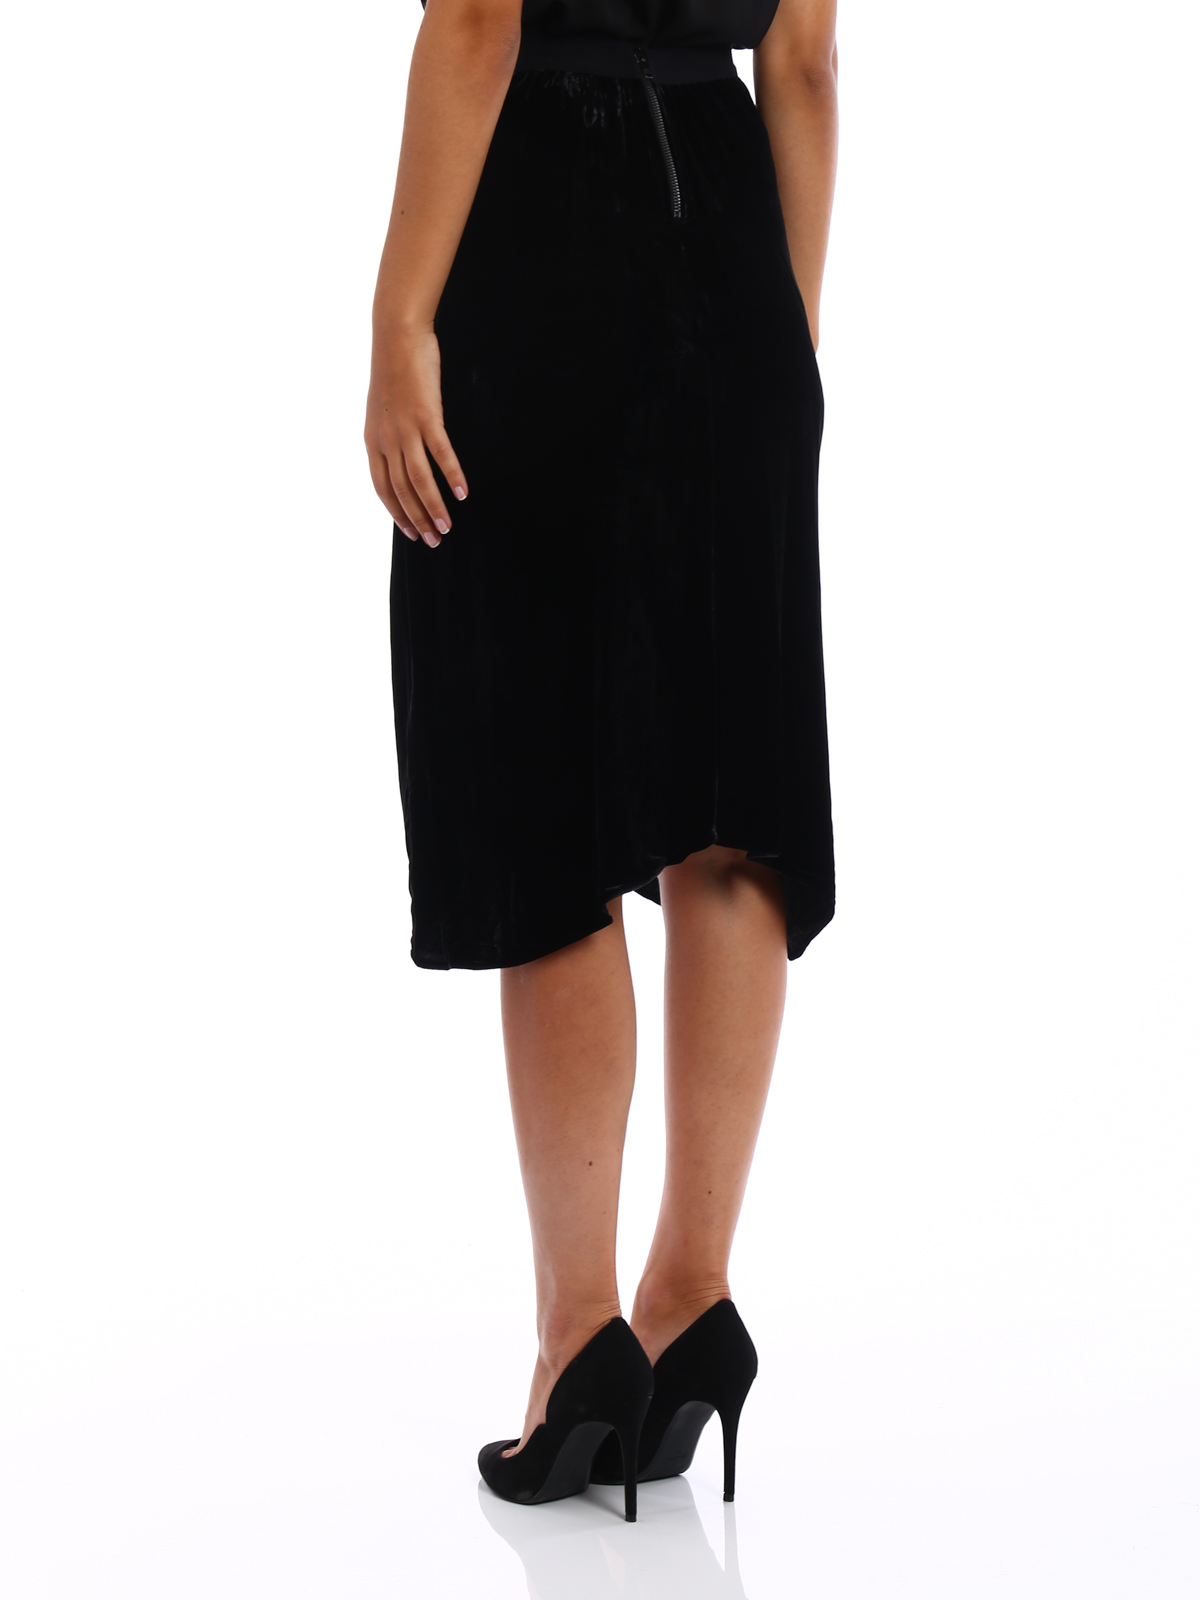 black velvet skirt knee length